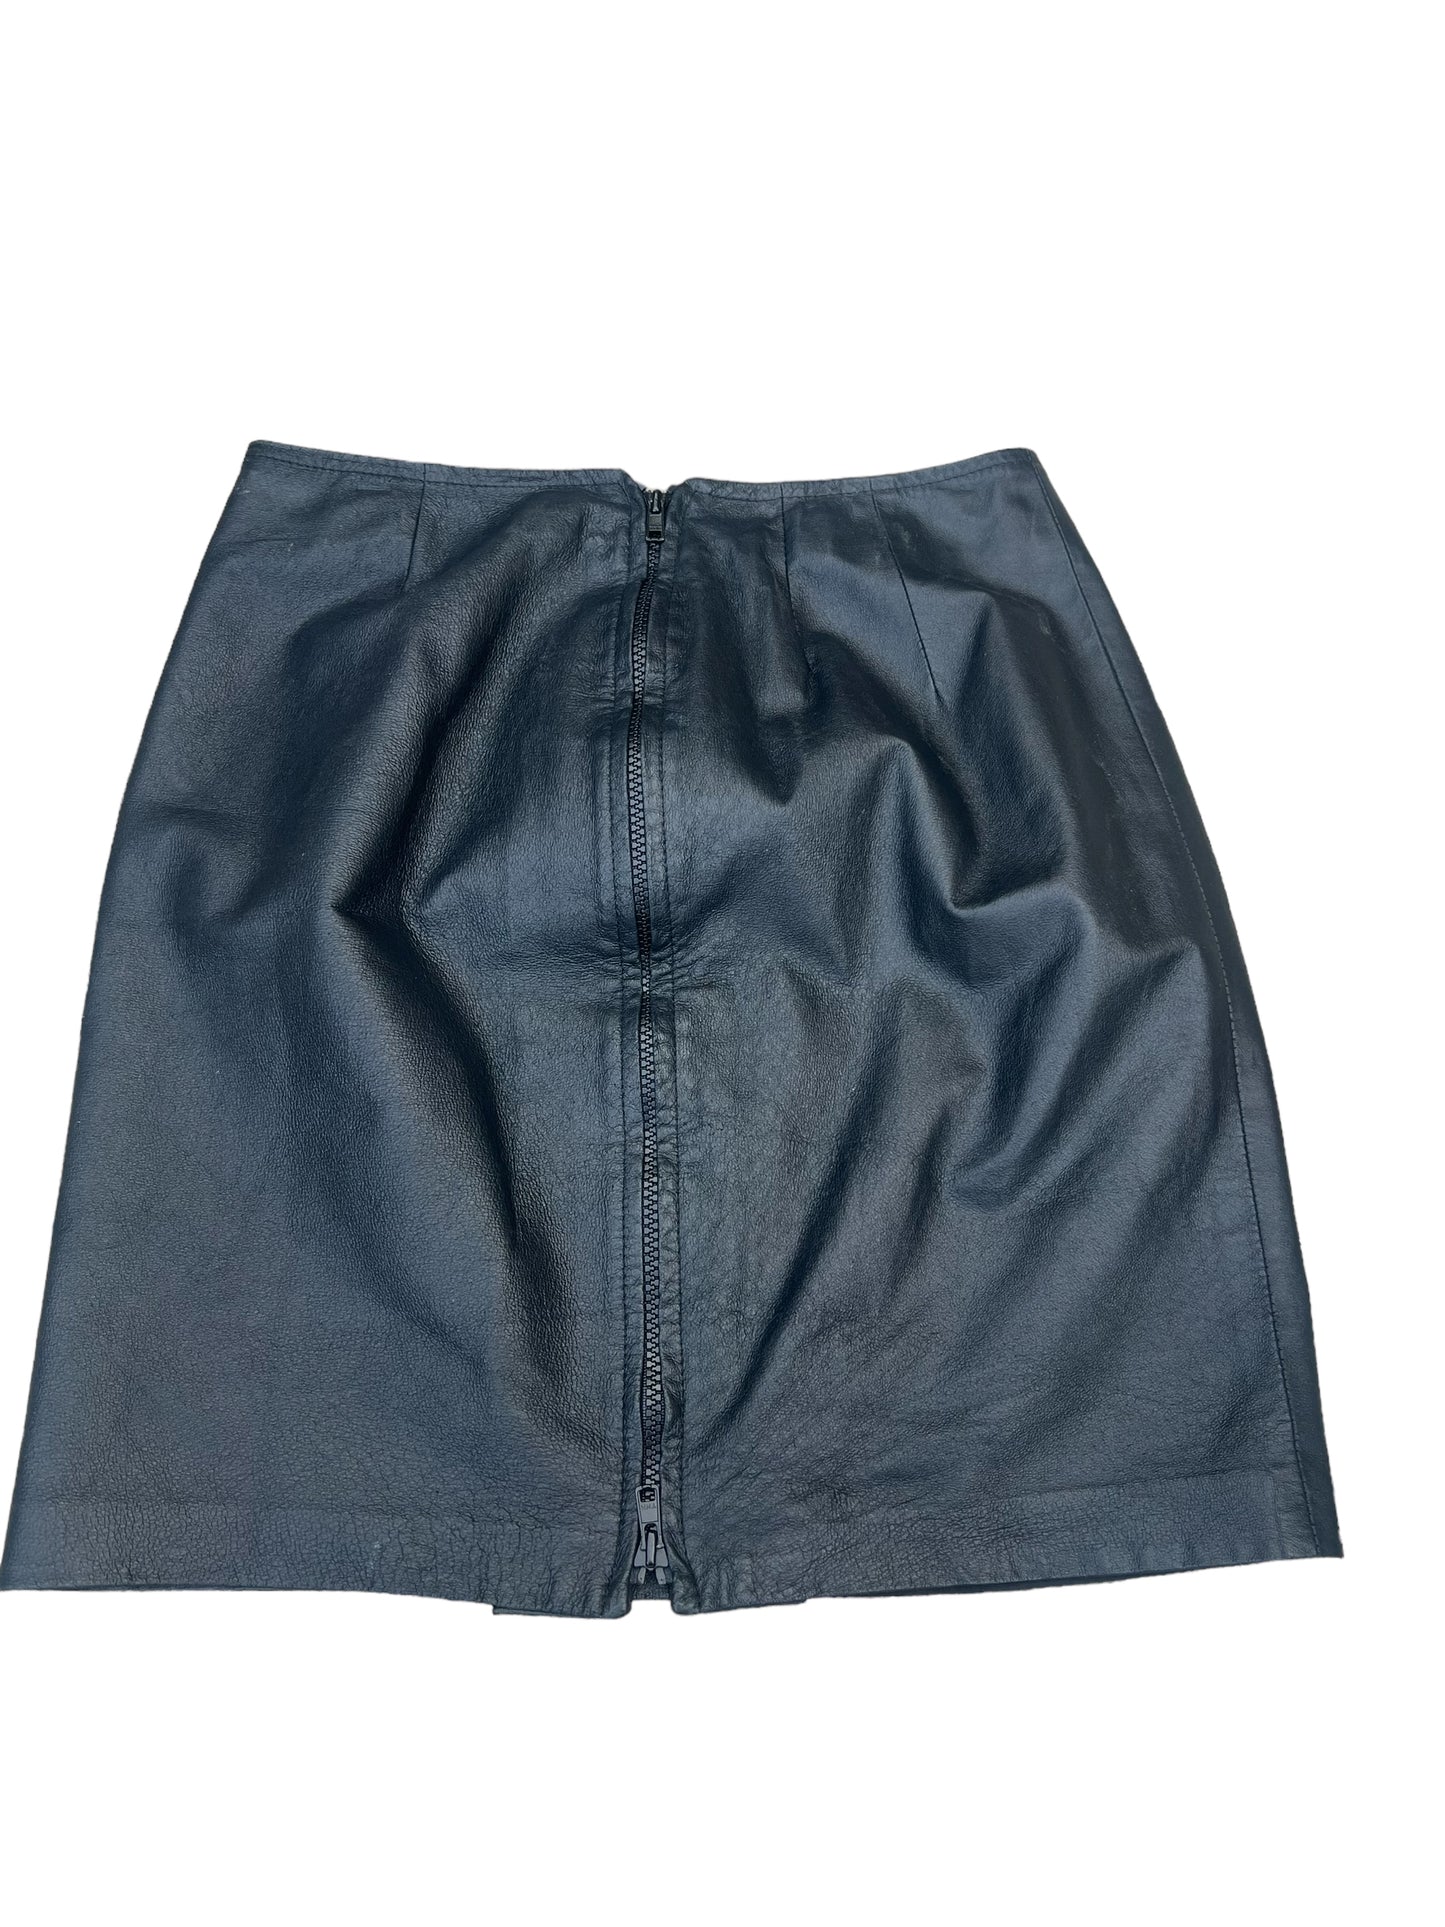 Danier Leather Skirt